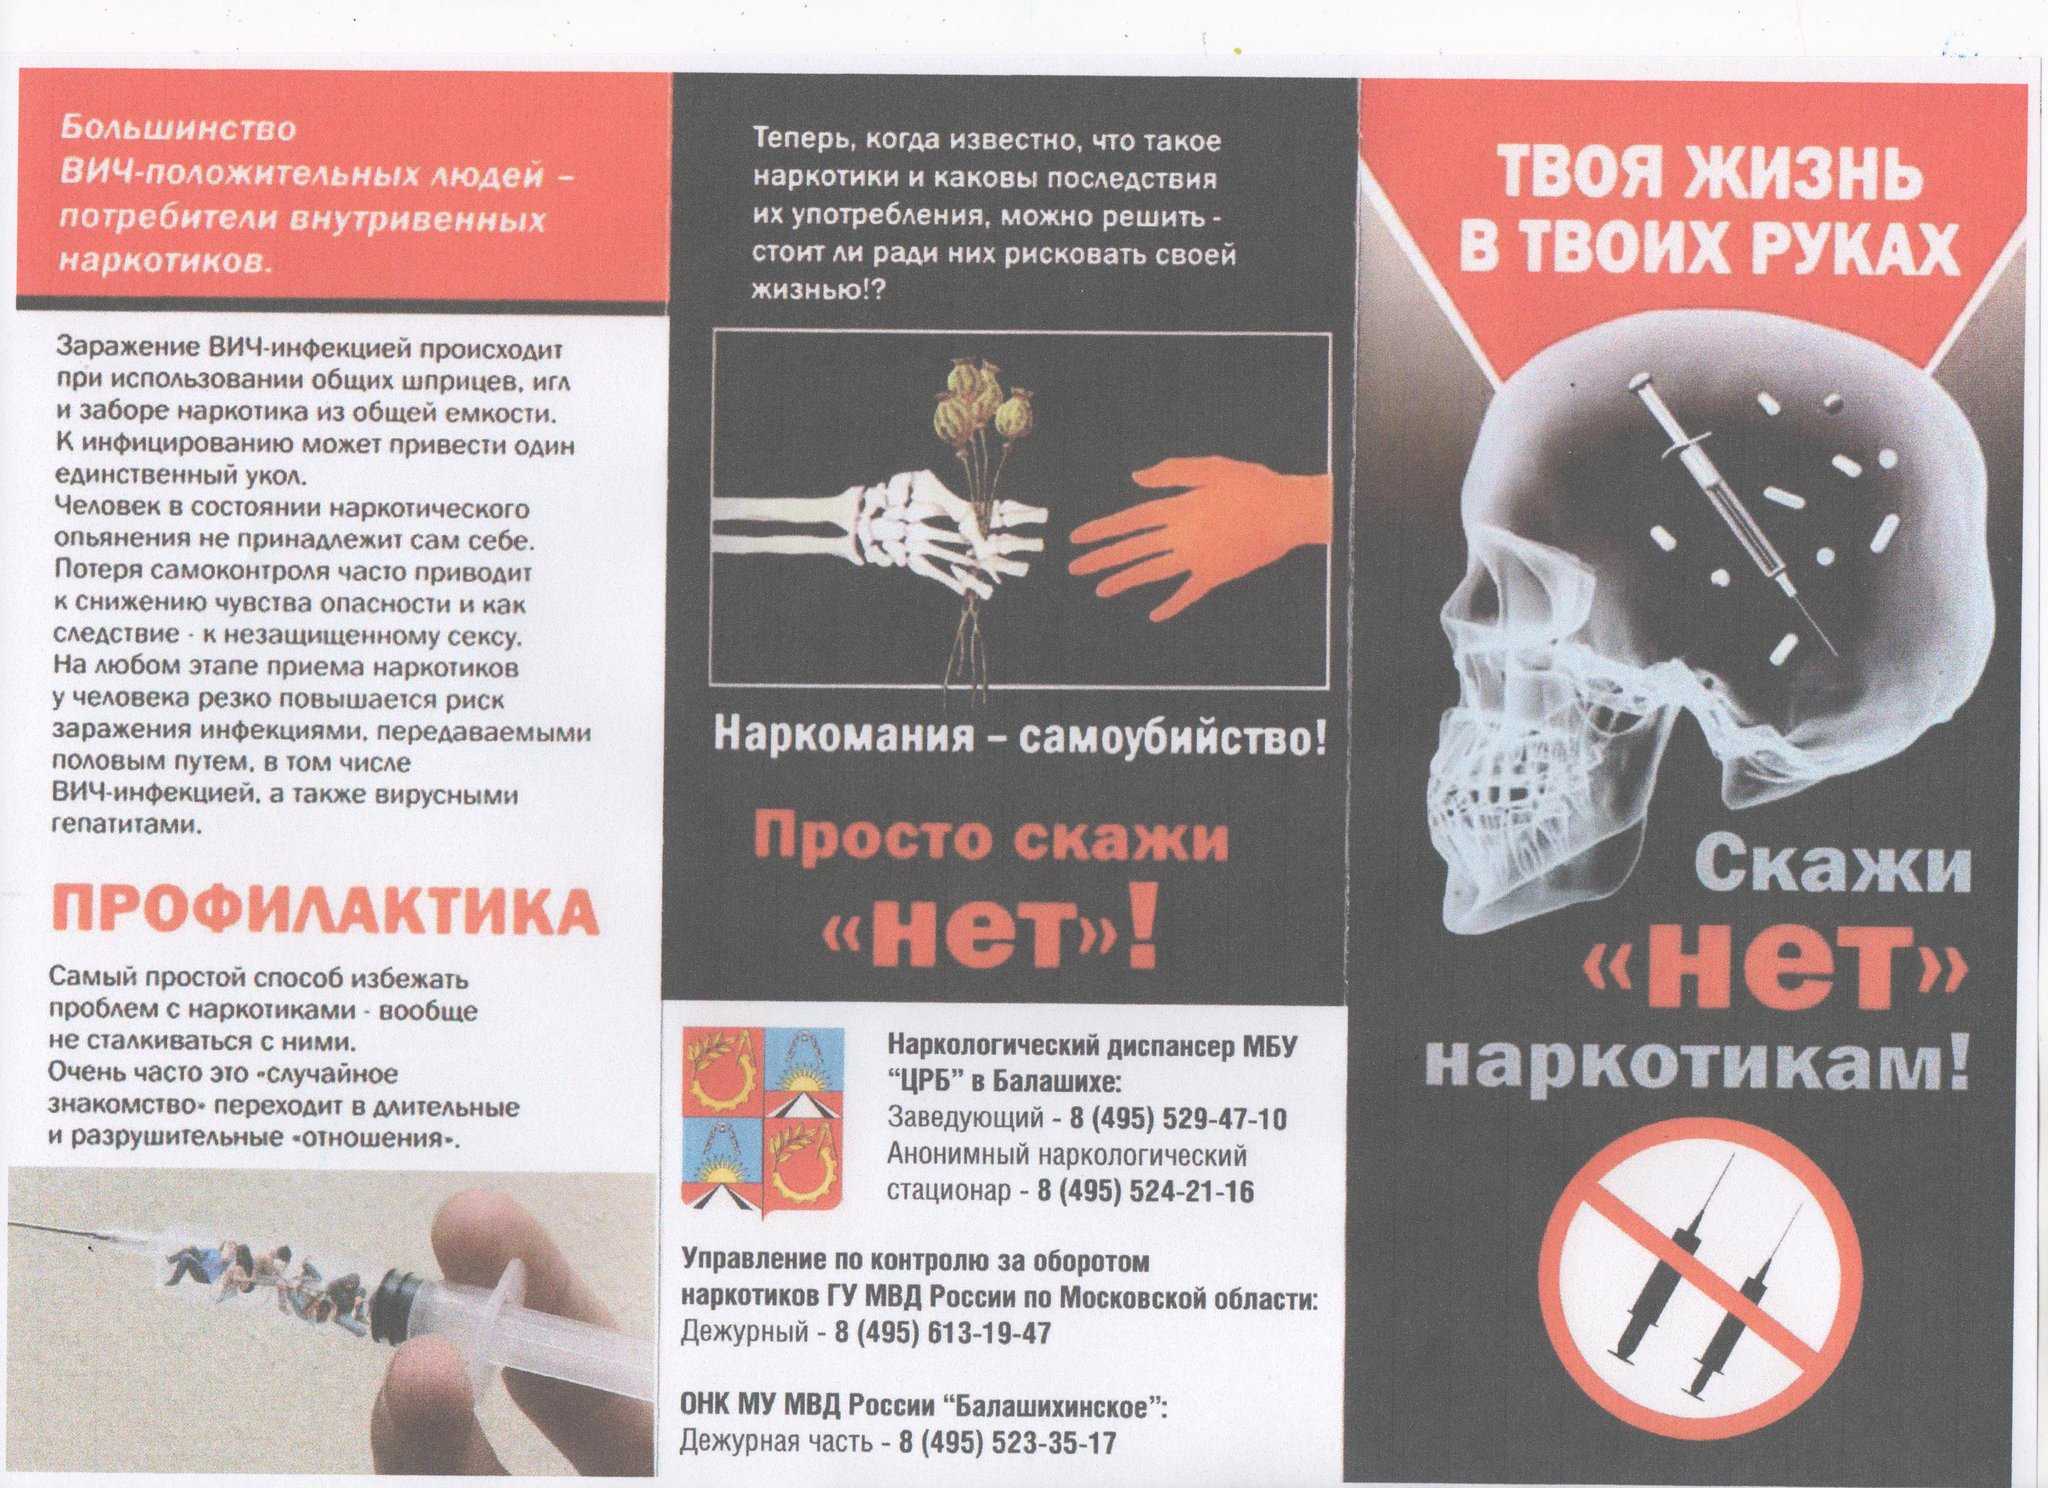 Репортажи по наркотикам tor browser русский форум hudra